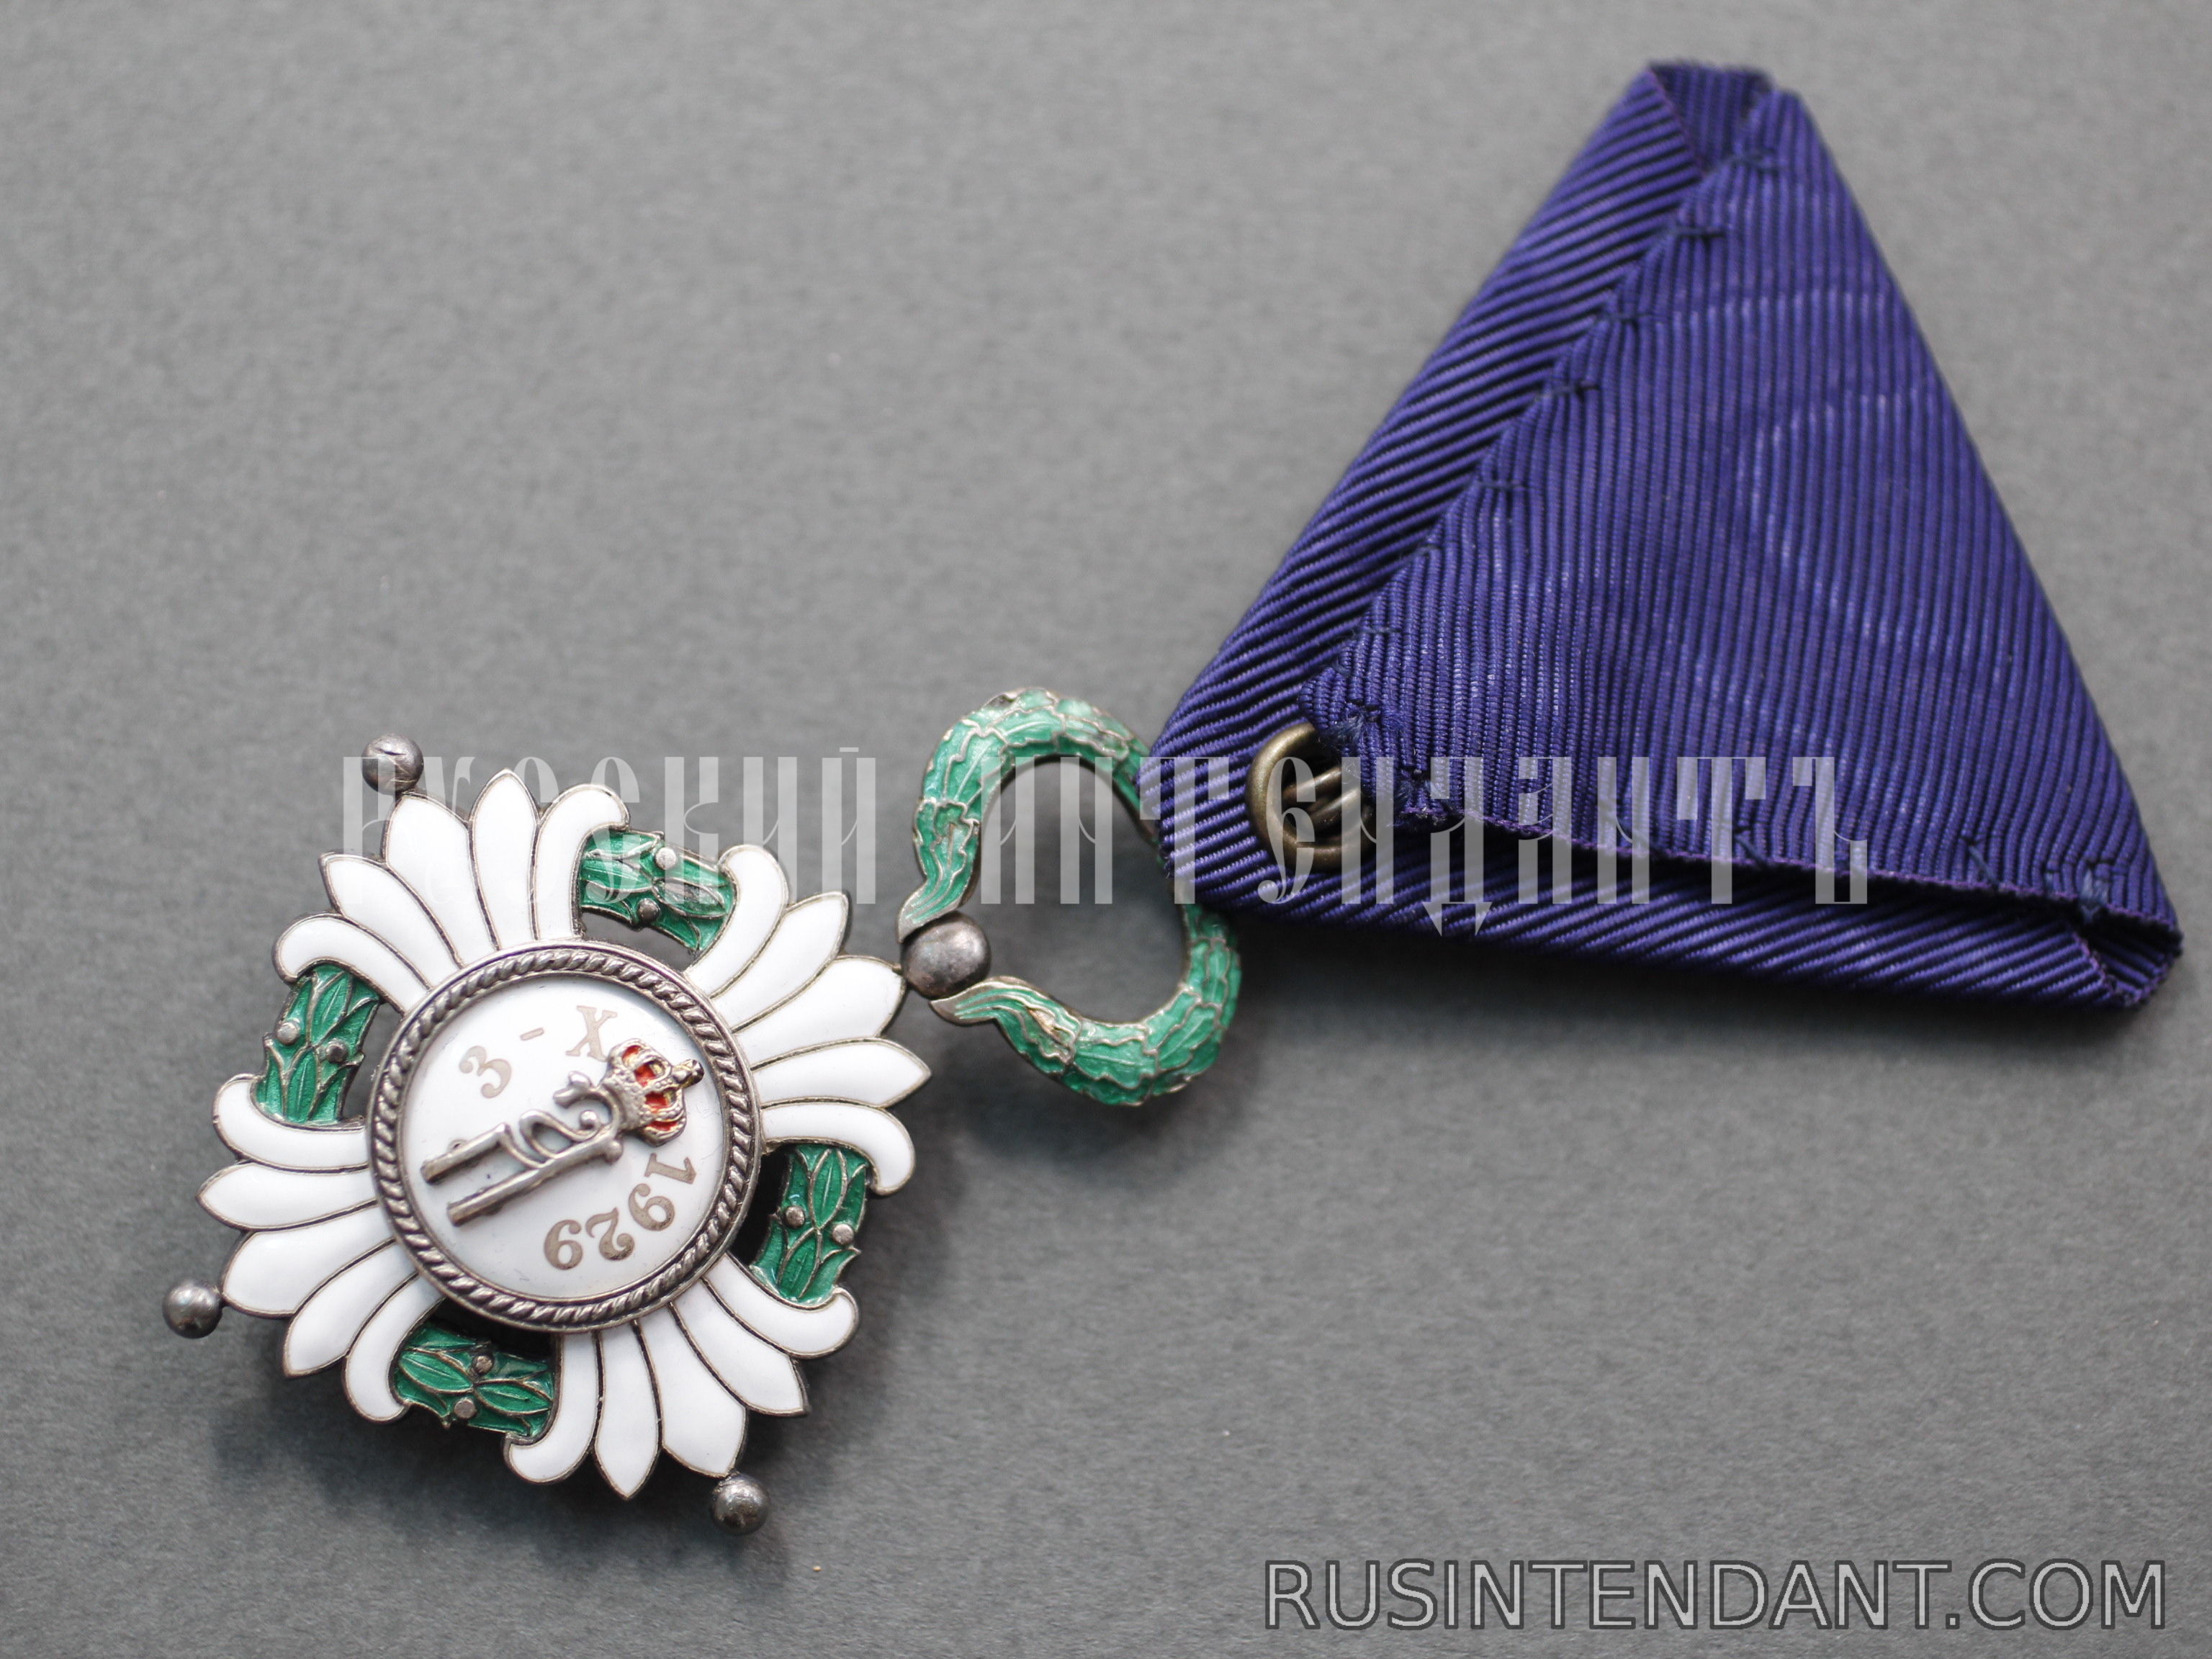 Фото 5: Орден Югославской короны 5 степени 